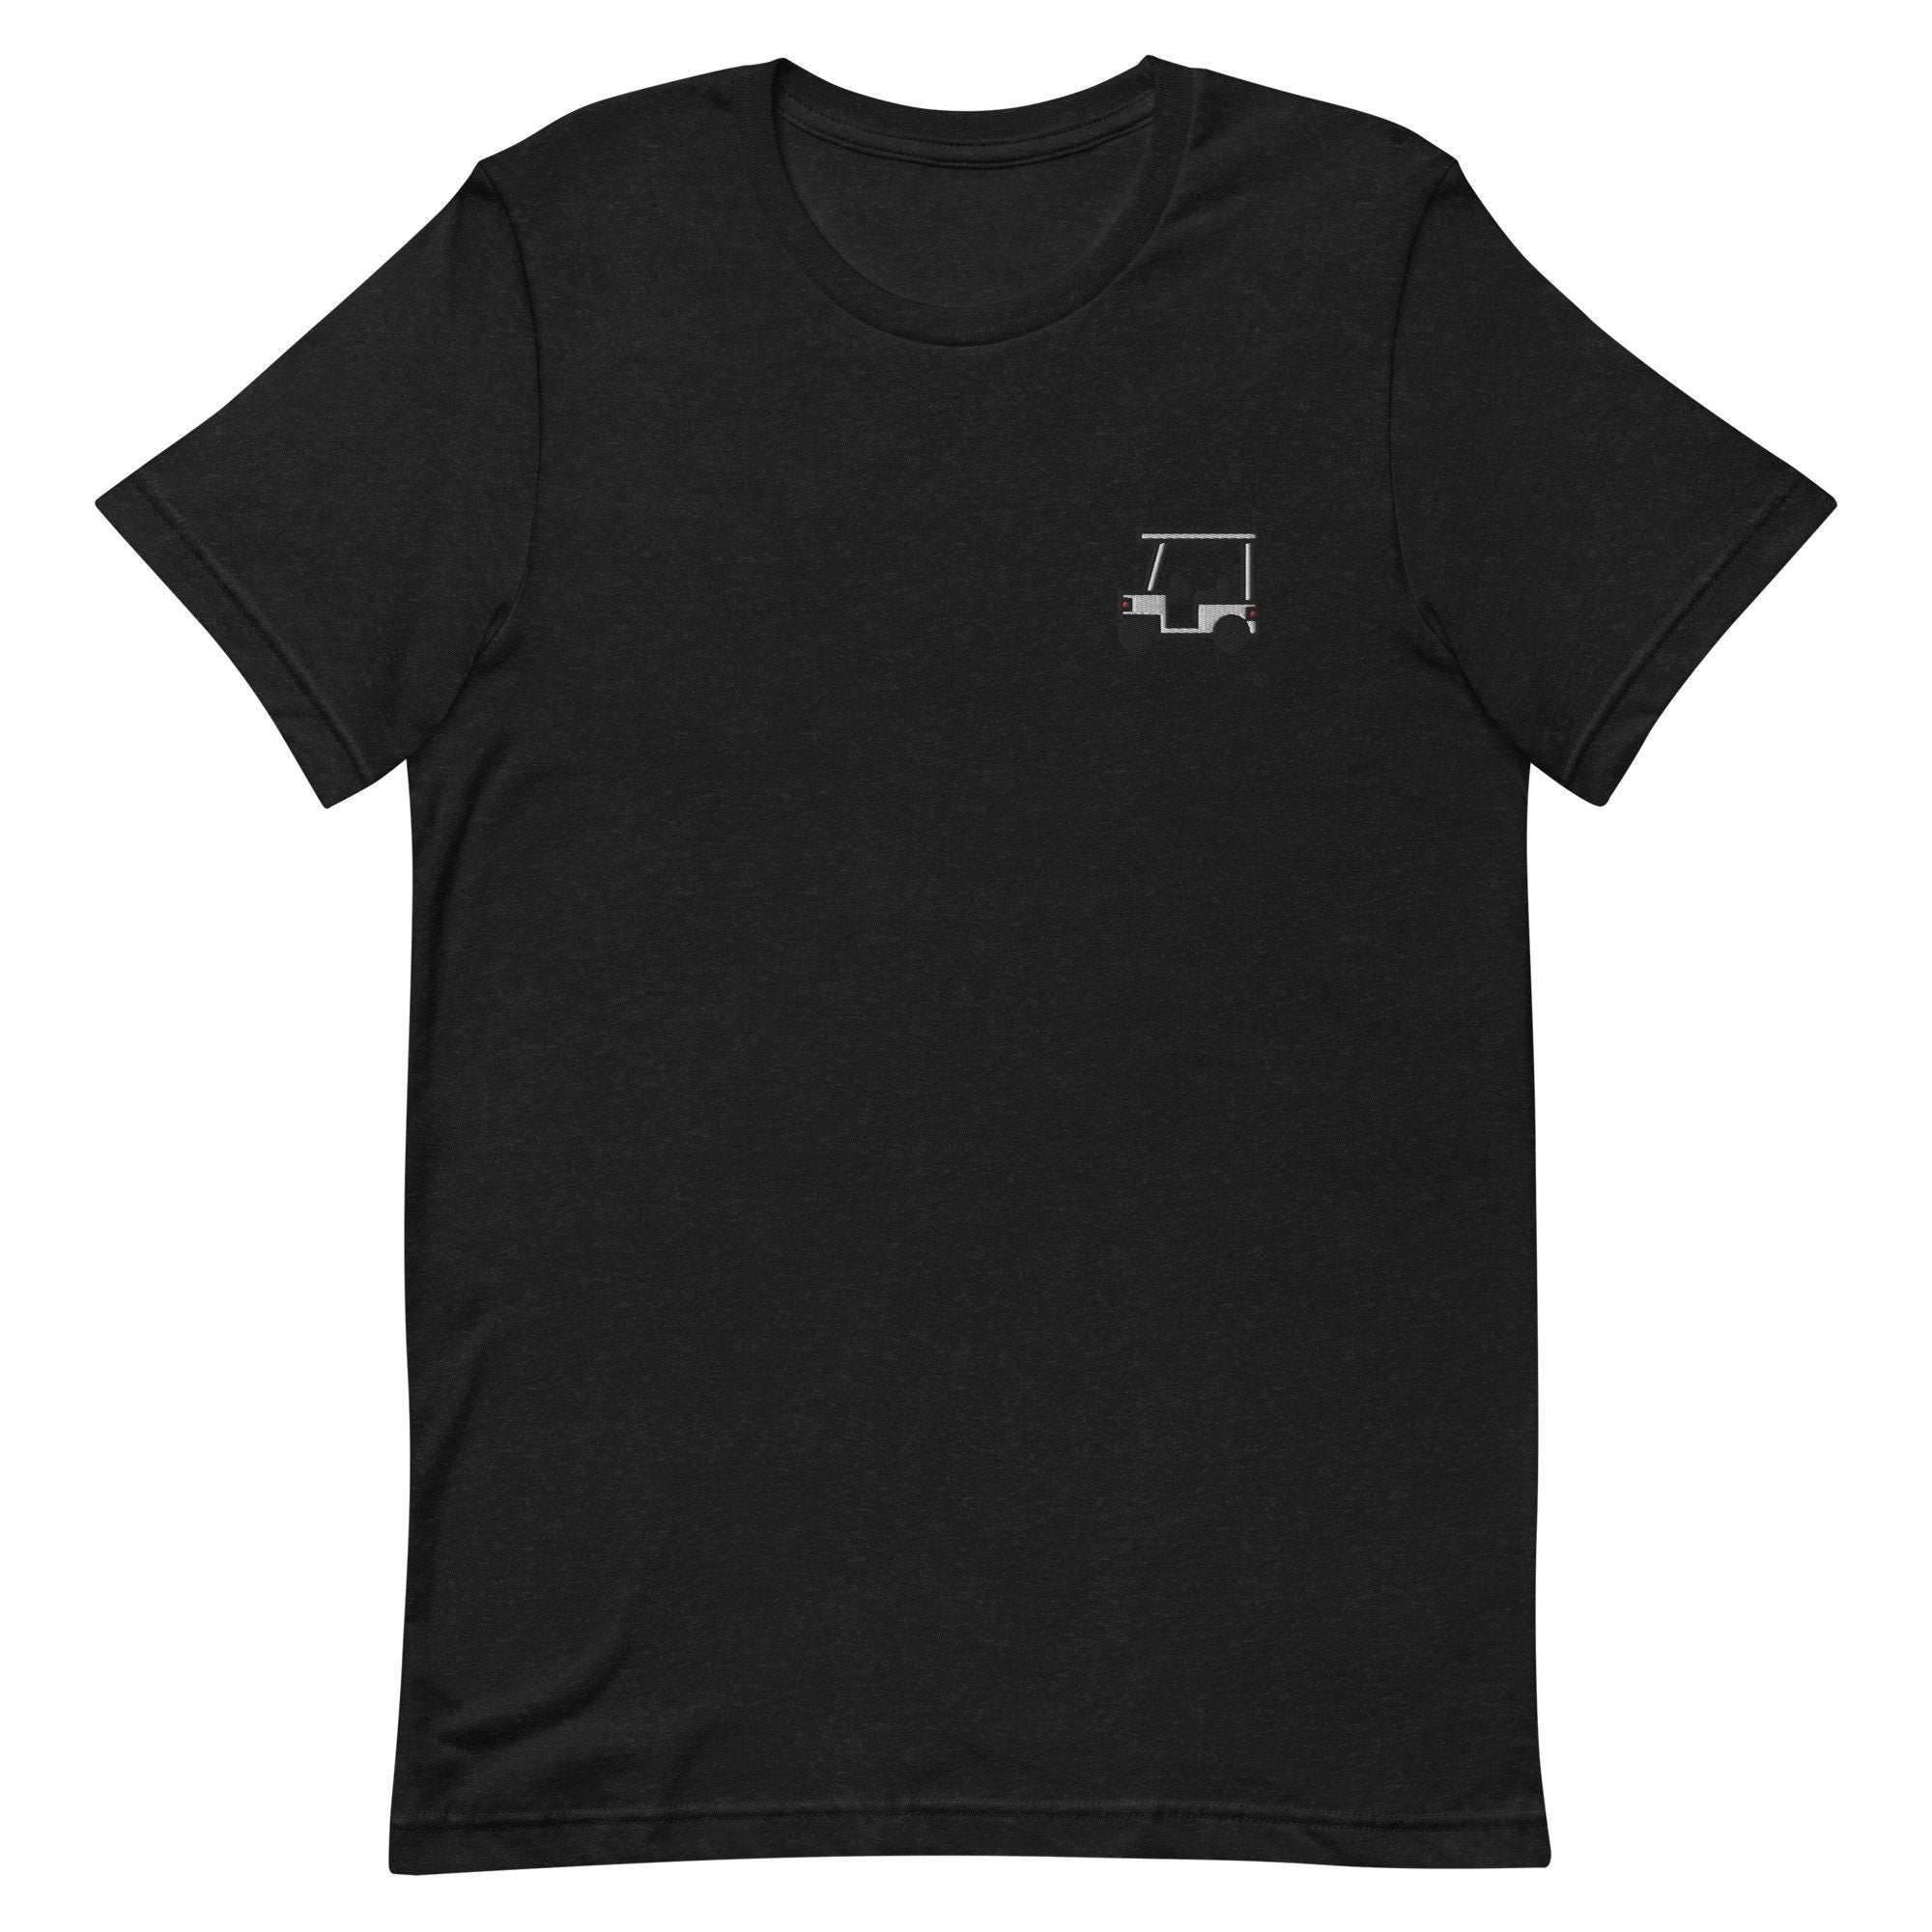 Golf Cart Premium Men's T-Shirt, Embroidered Men's T-Shirt Gift for Boyfriend, Men's Short Sleeve Shirt - Multiple Colors